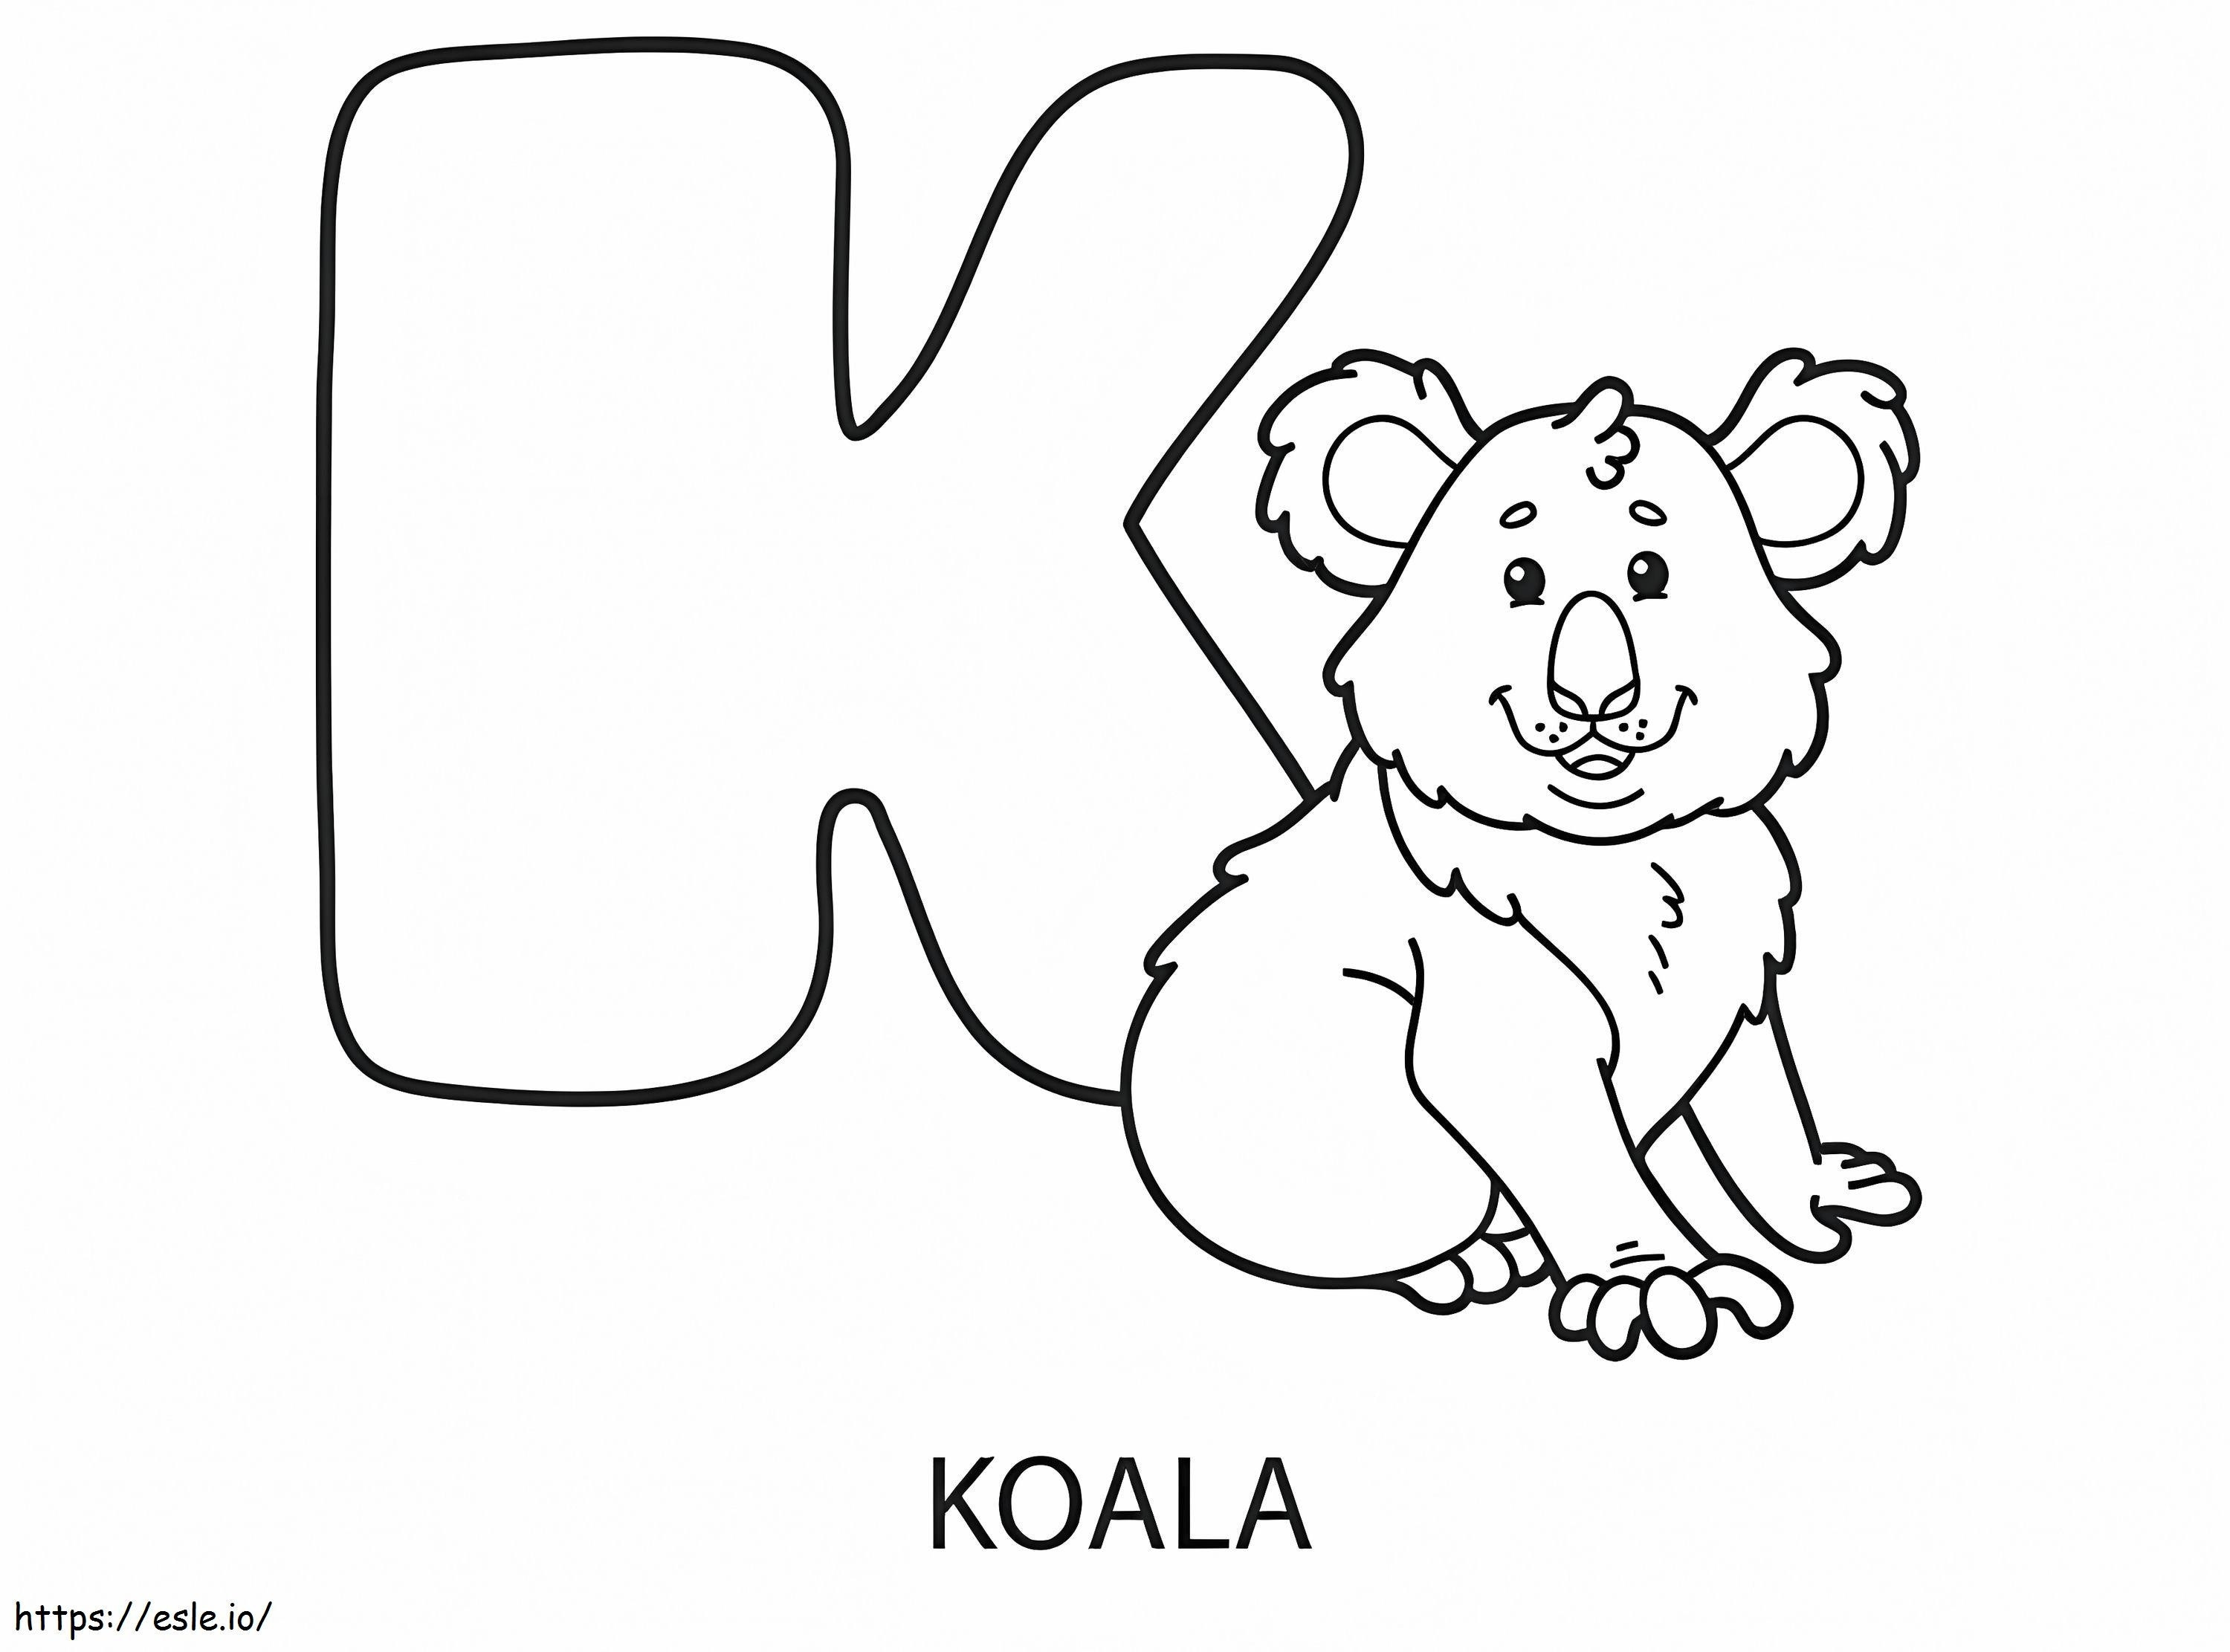 Letra K para coala para colorir